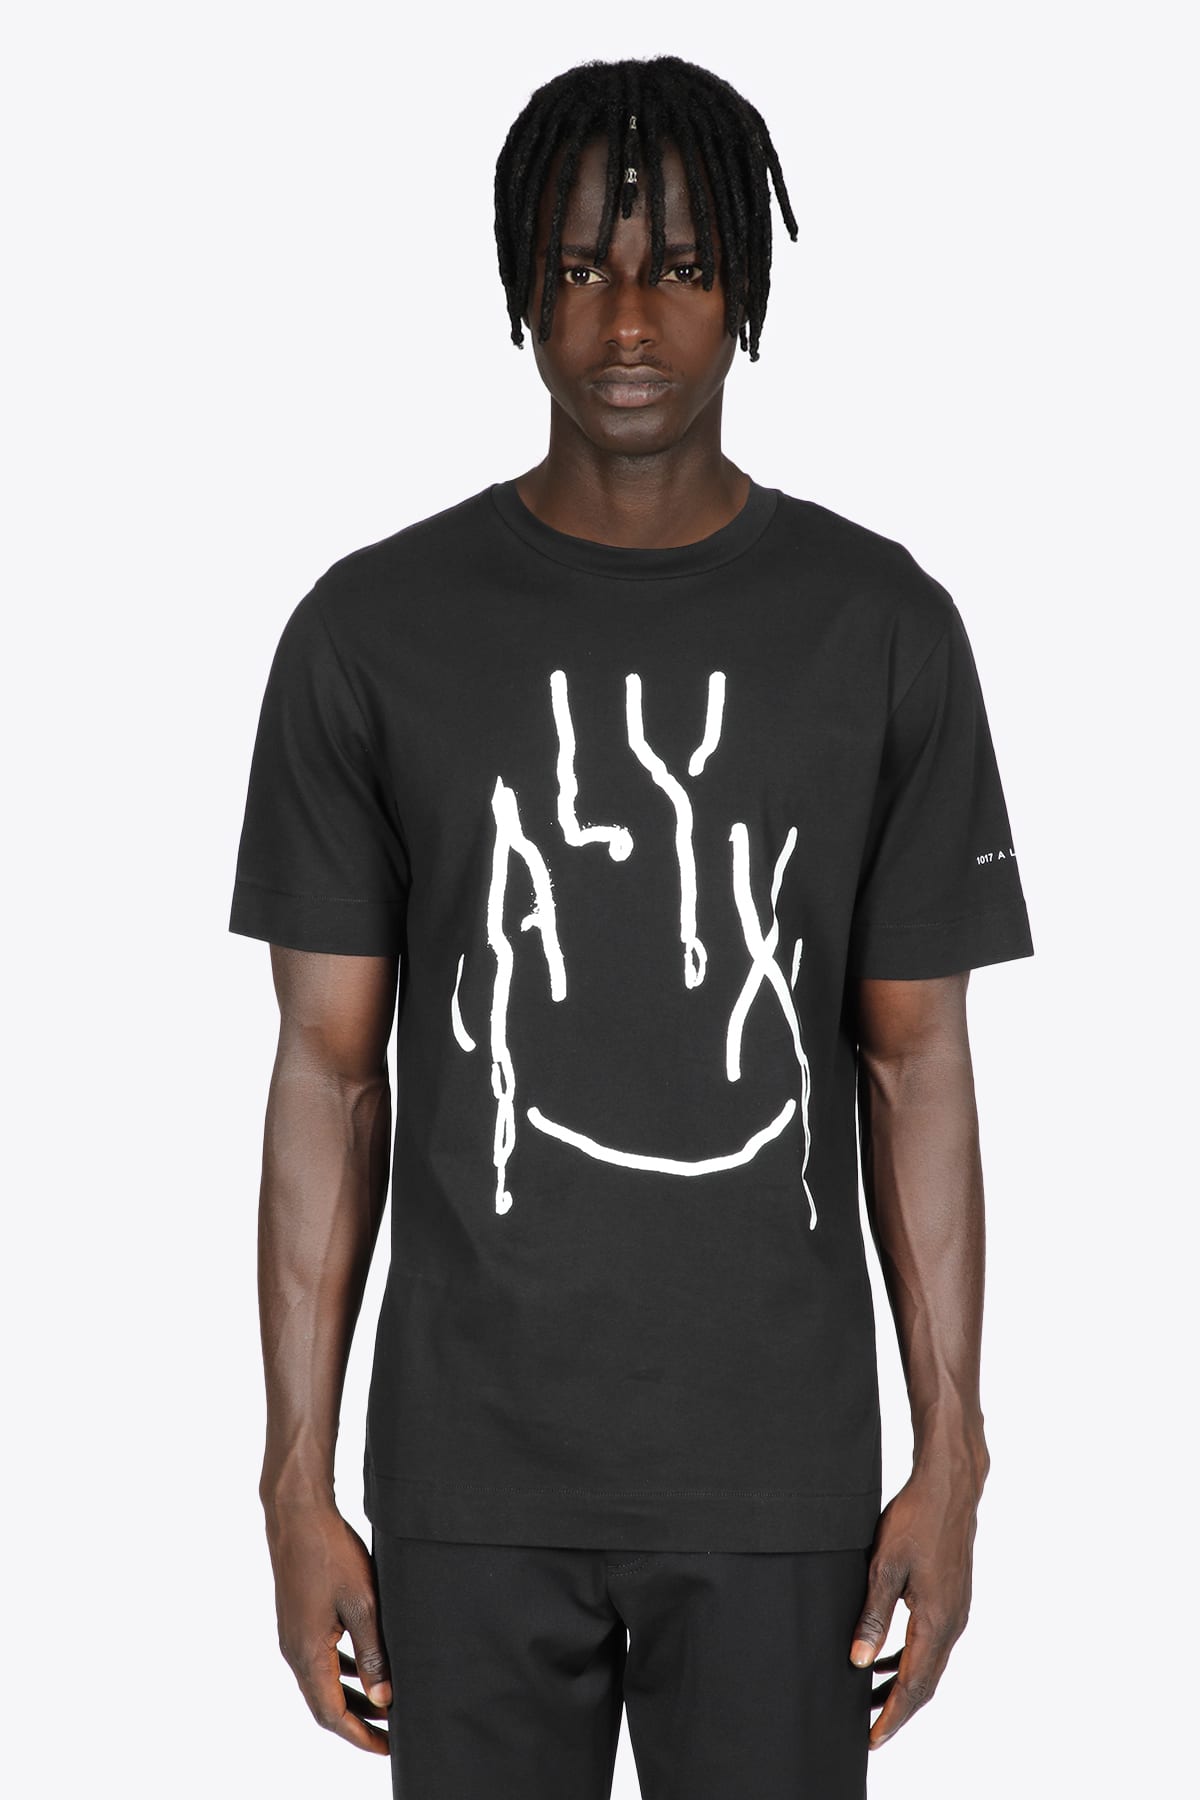 1017 ALYX 9SM S/s Graphic T-shirt Black cotton t-shirt with graphic logo - S/S Graphic t-shirt